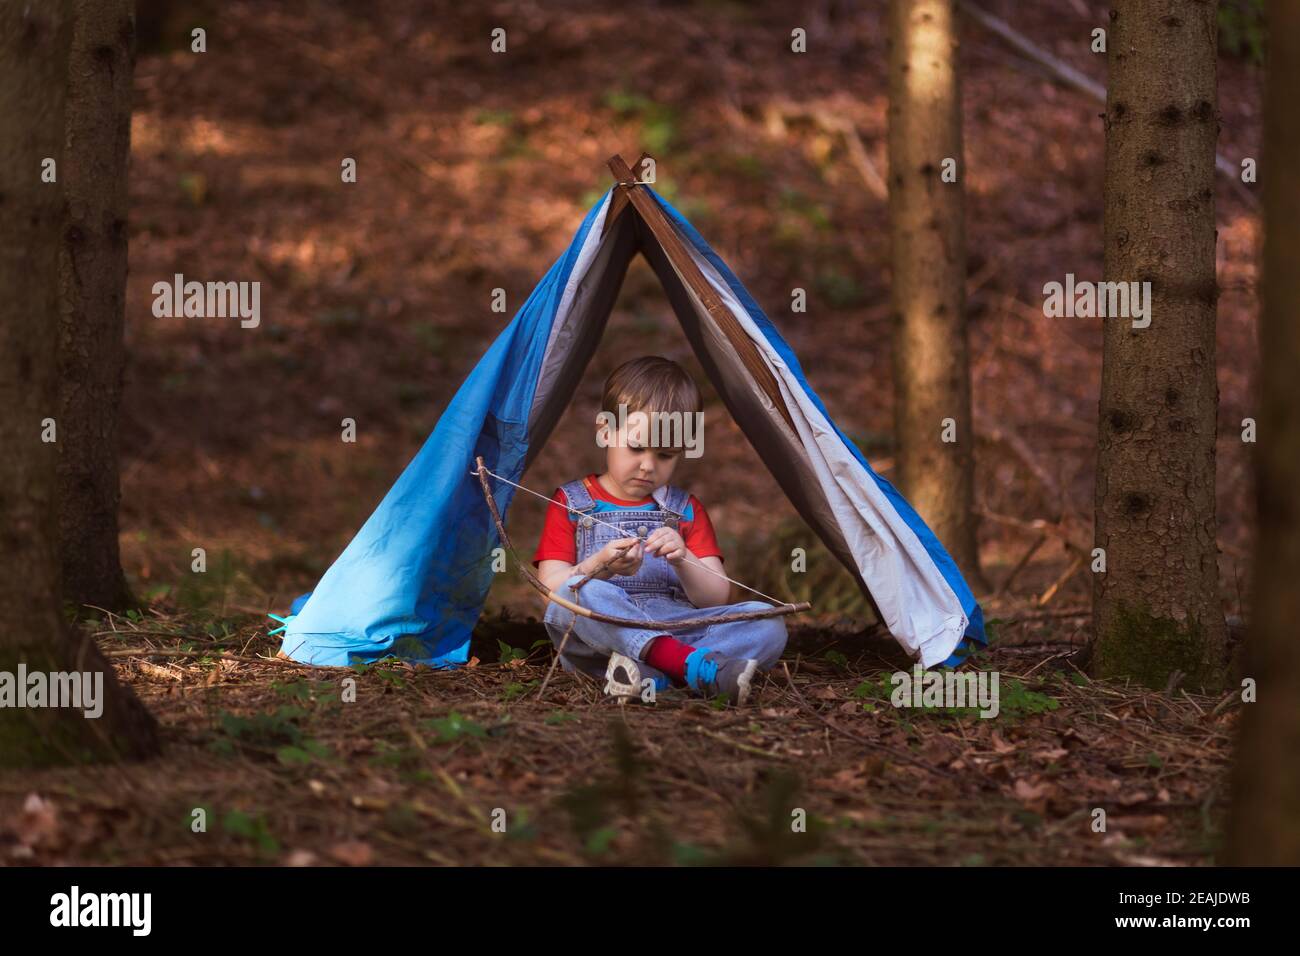 Junge sitzt unter einem Spielzelt im Wald, spielt allein, nachdenklich und in Einsamkeit, genießt, einen Bogen zu schaffen, spielen vorgebend. Stockfoto